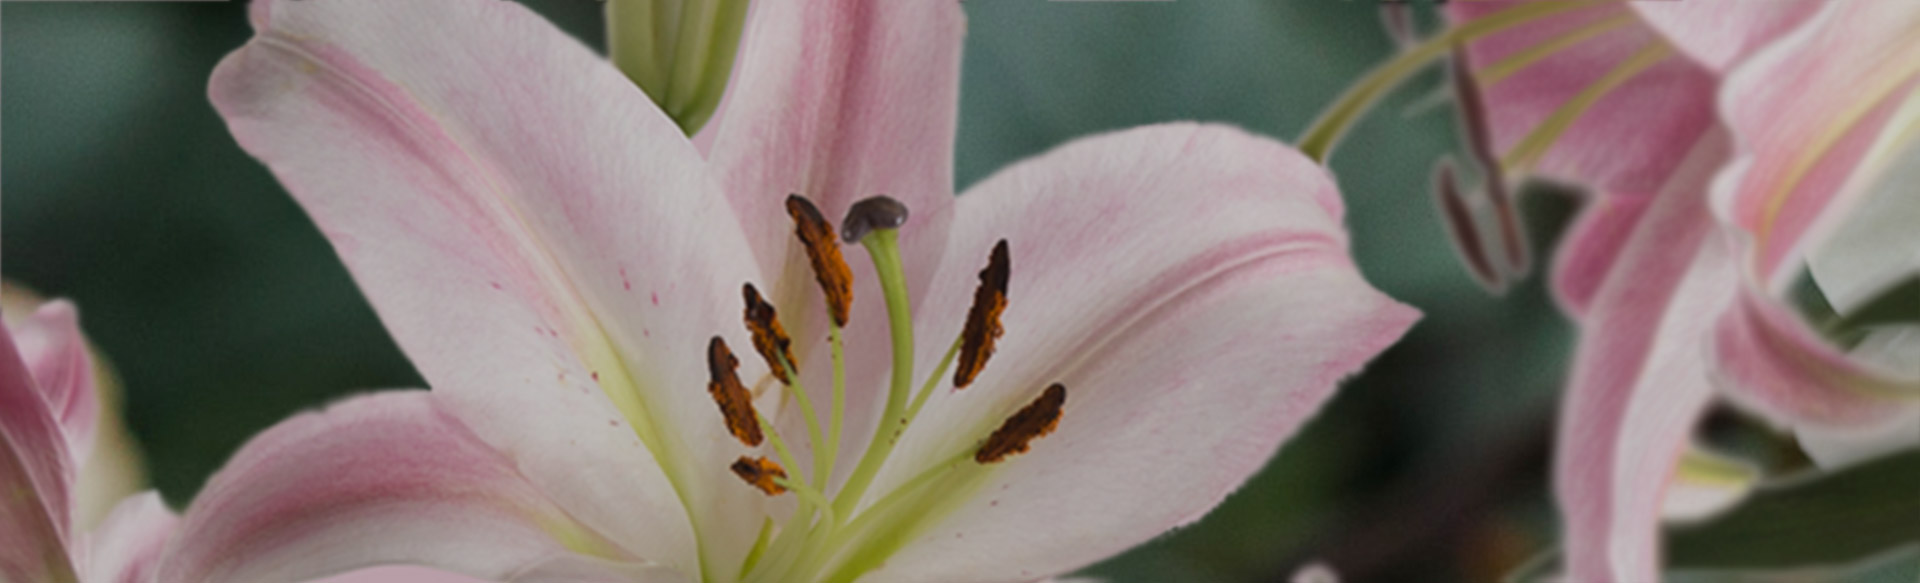 lilies-wholesale-flowers.jpg